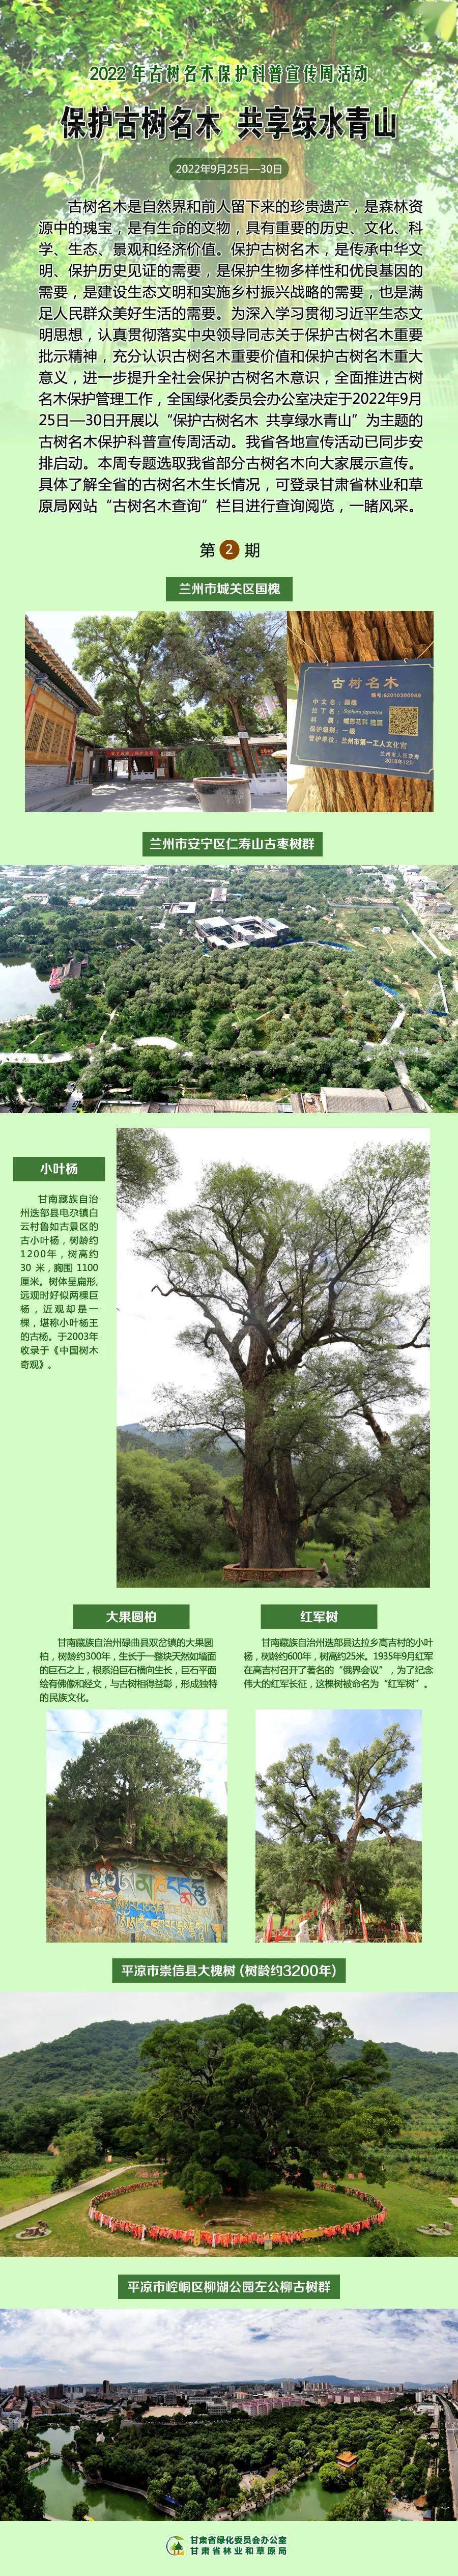 宣传海报 保护古树名木共享绿水青山 保护 名木 海报